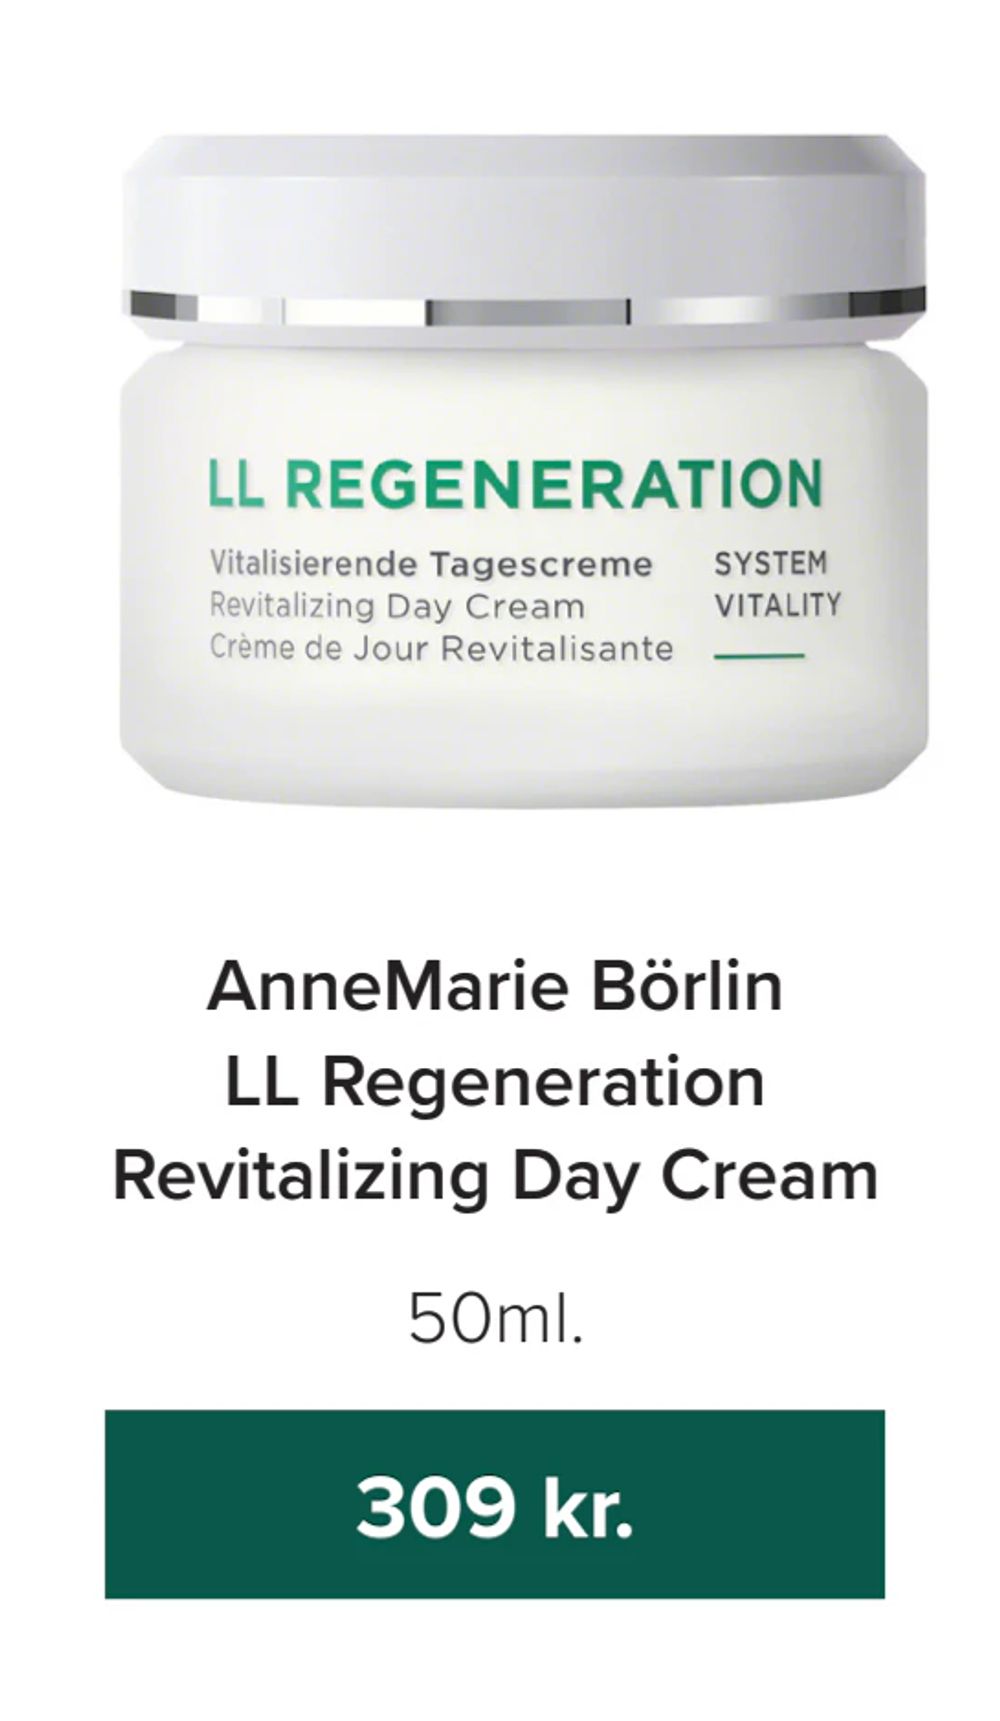 Tilbud på AnneMarie Börlin LL Regeneration Revitalizing Day Cream fra Helsemin til 309 kr.